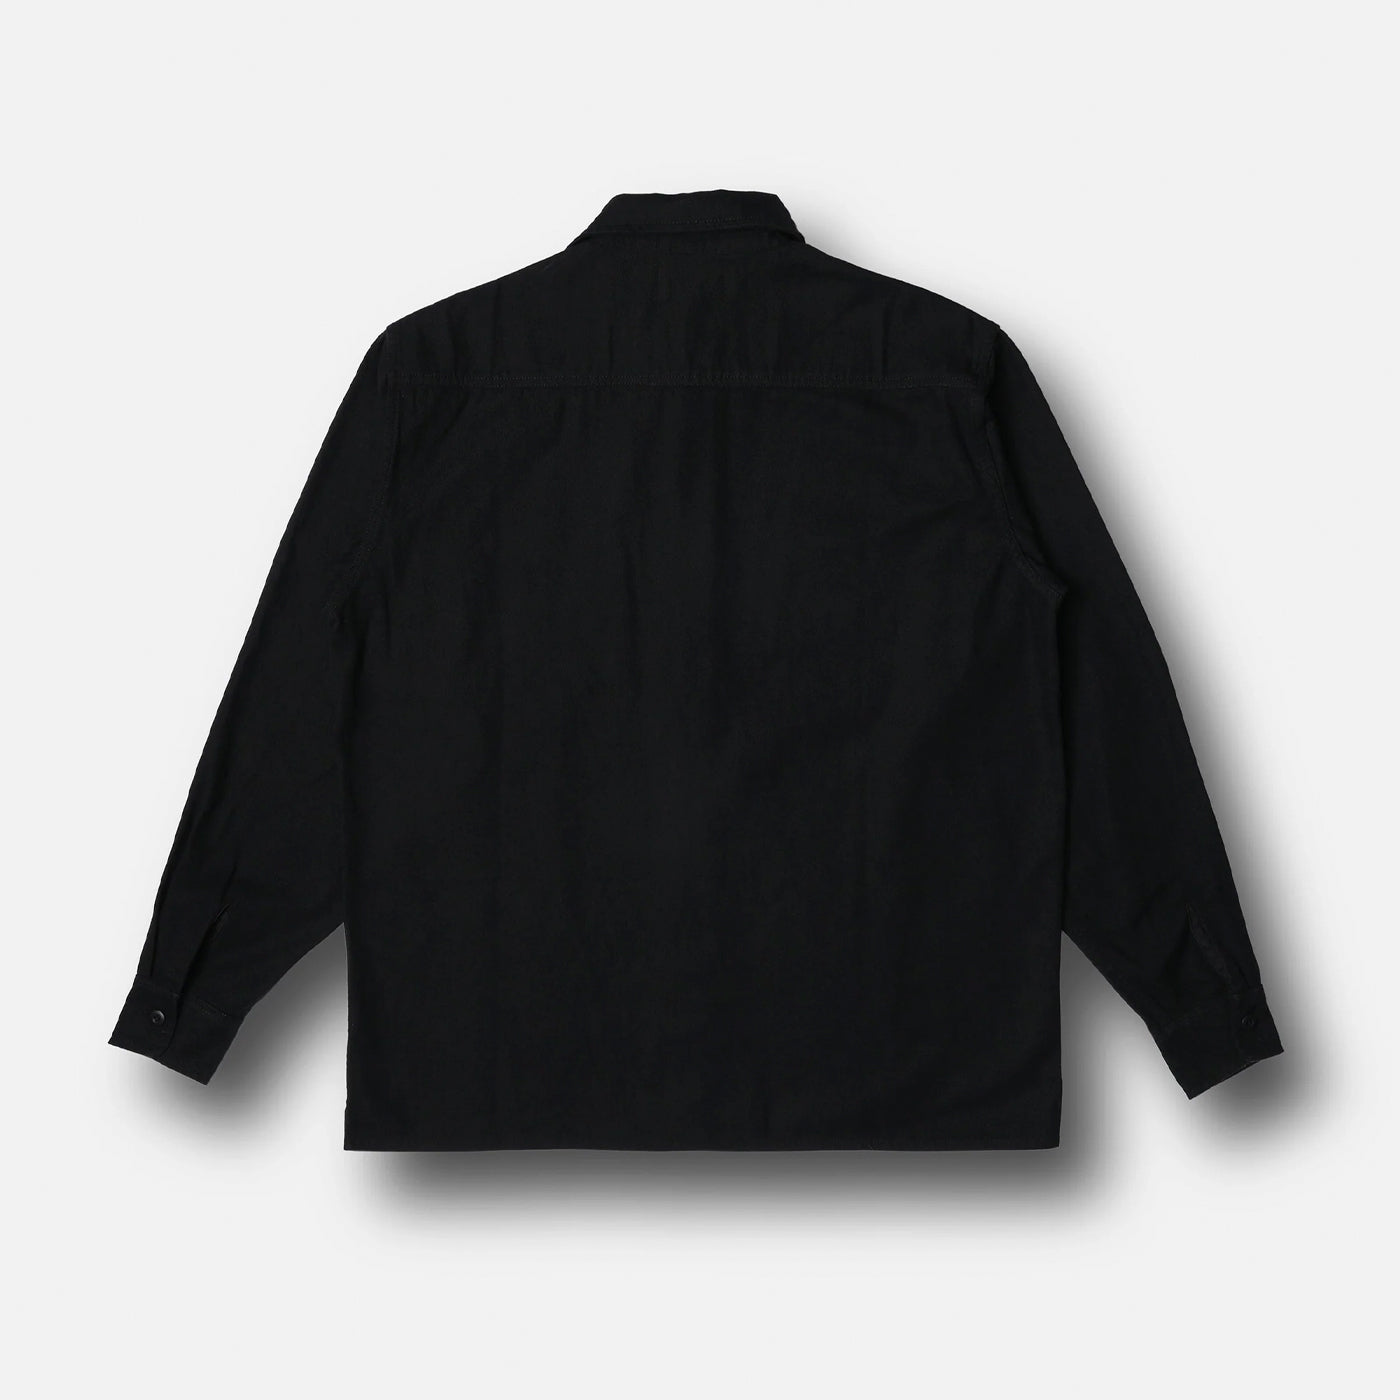 Rivvia Projects | Off Track L/S Shirt | Black